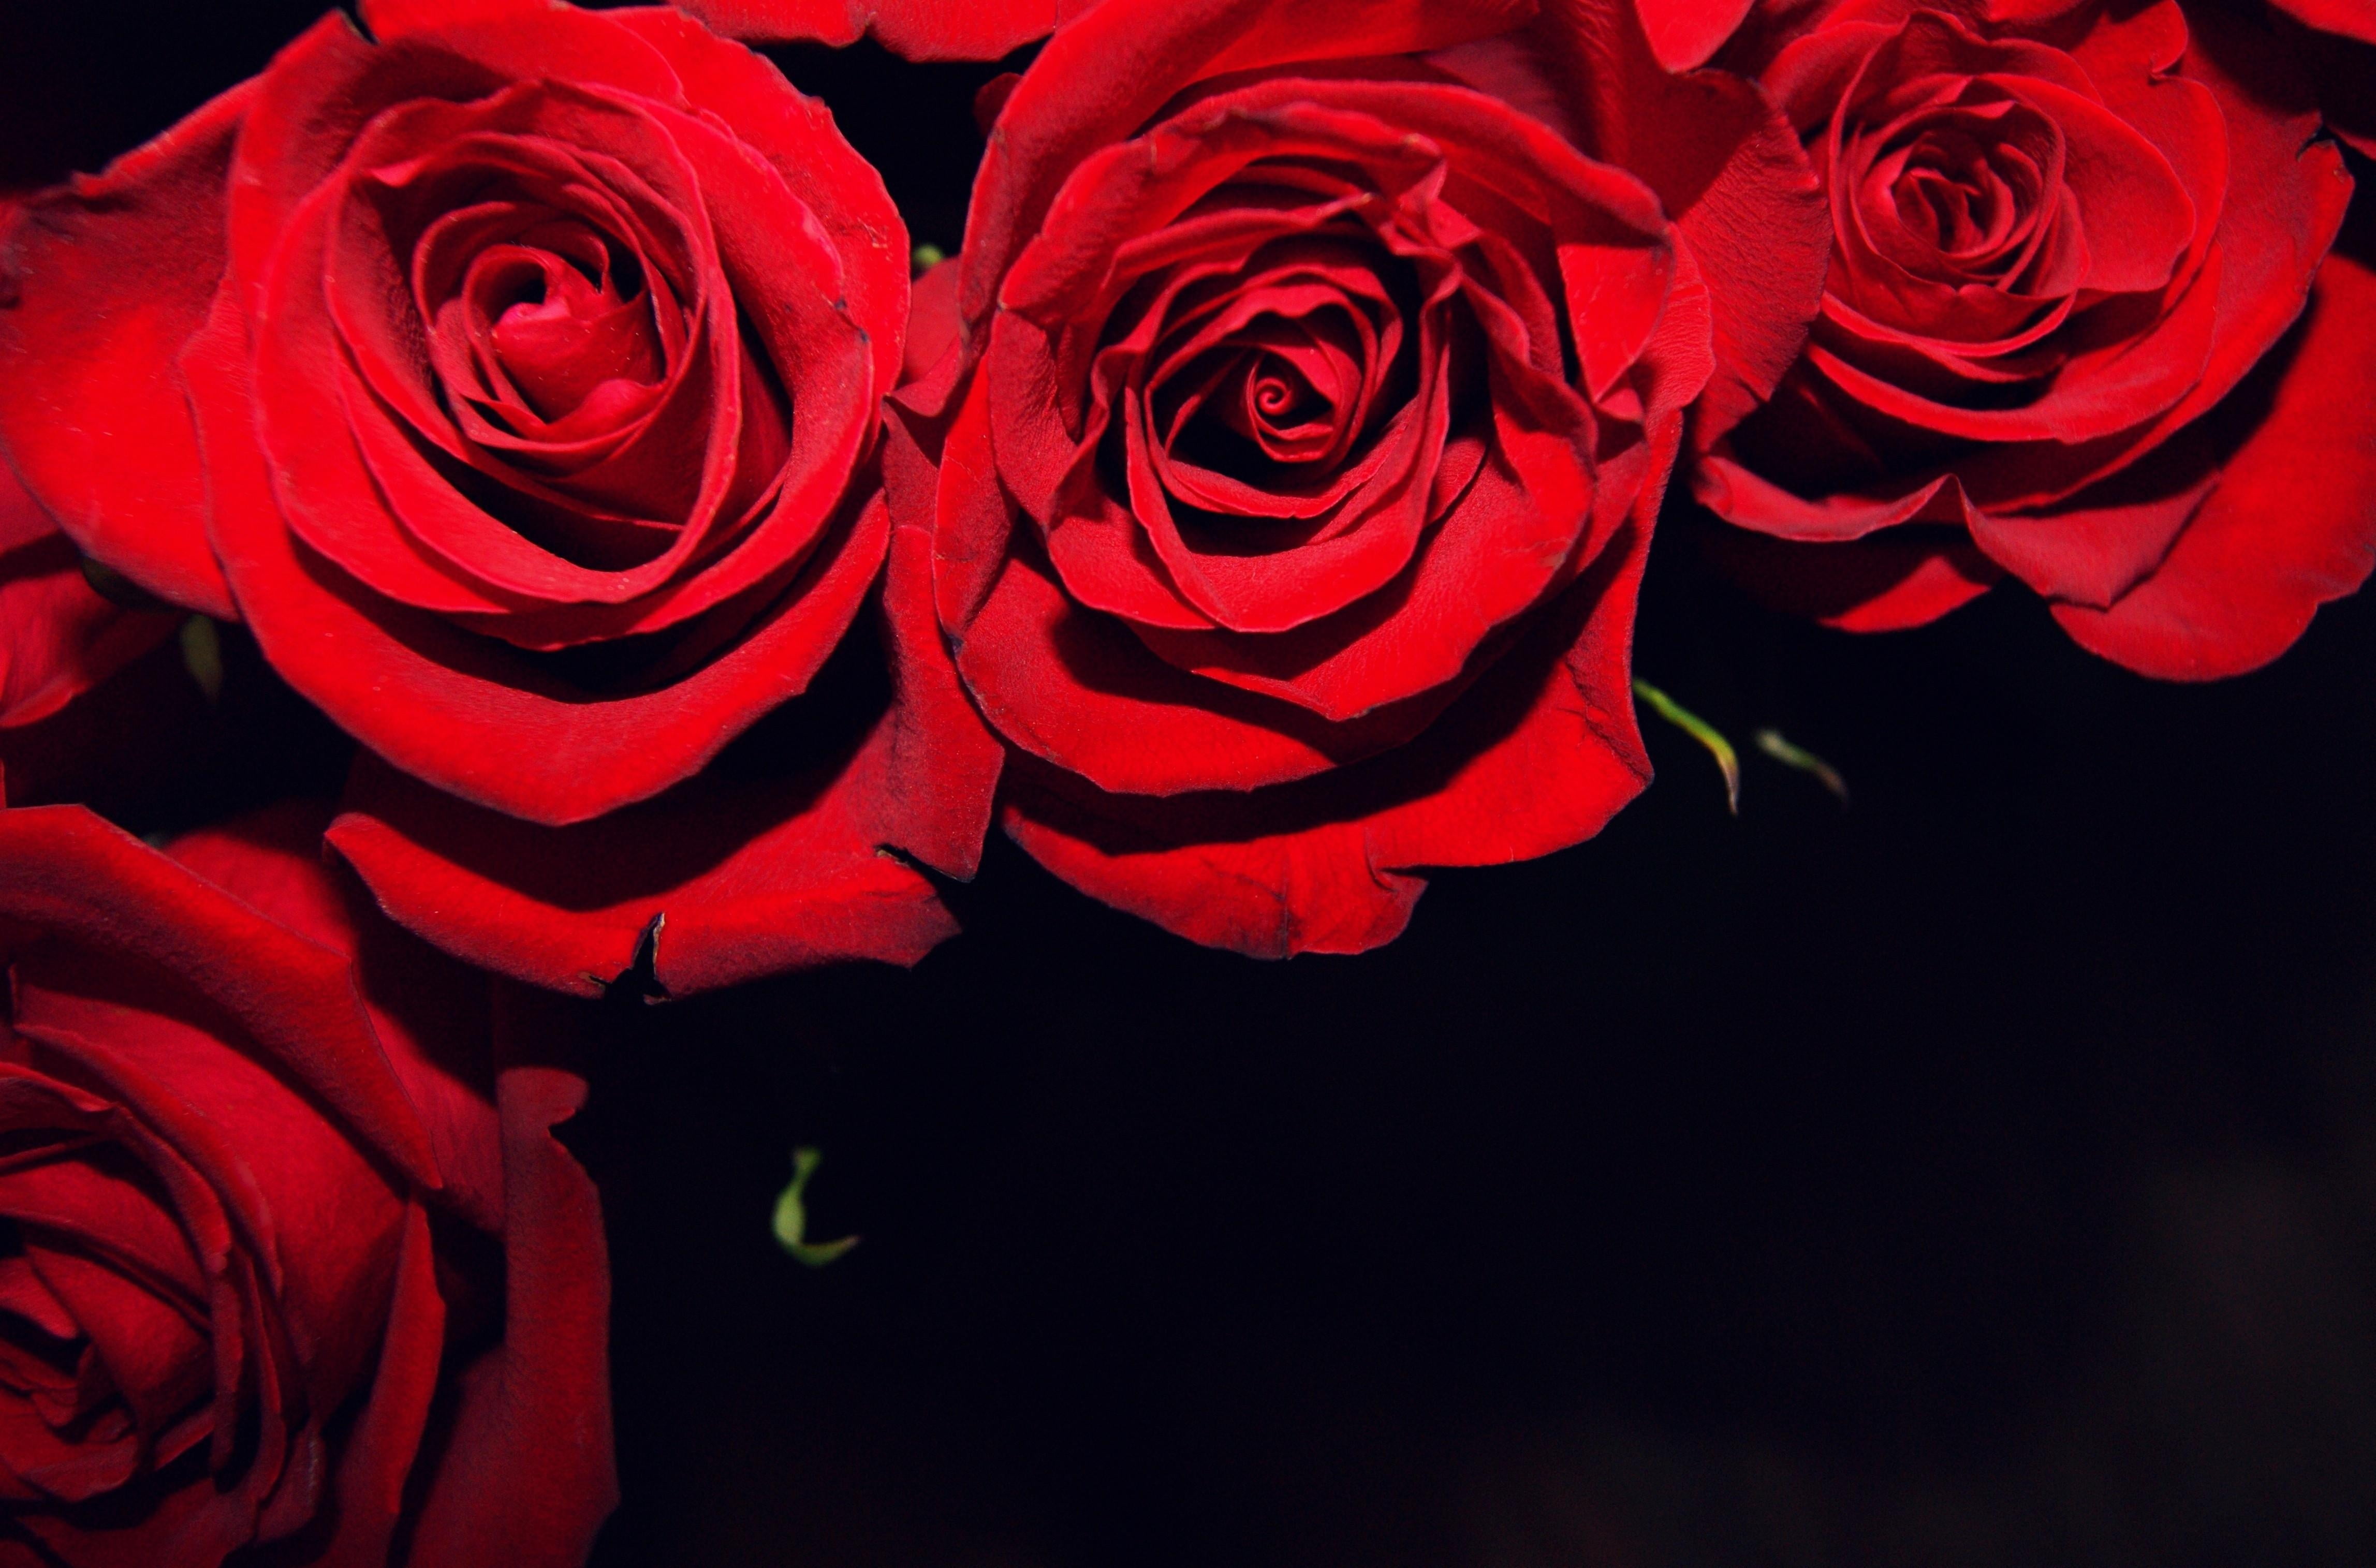 red rose arrangement, roses, flowers, buds, black background